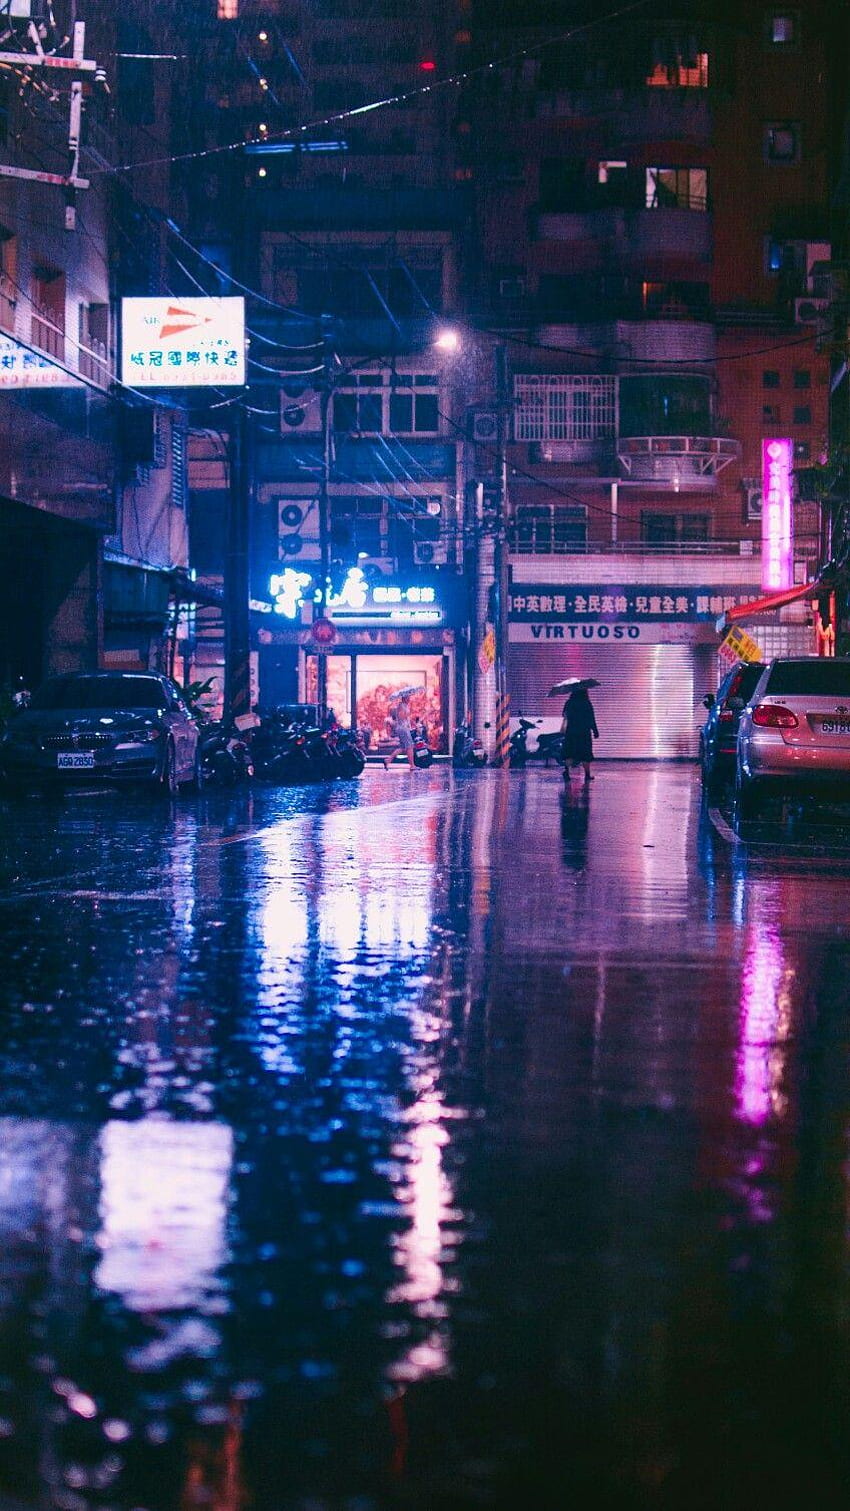 Rainy night in a city